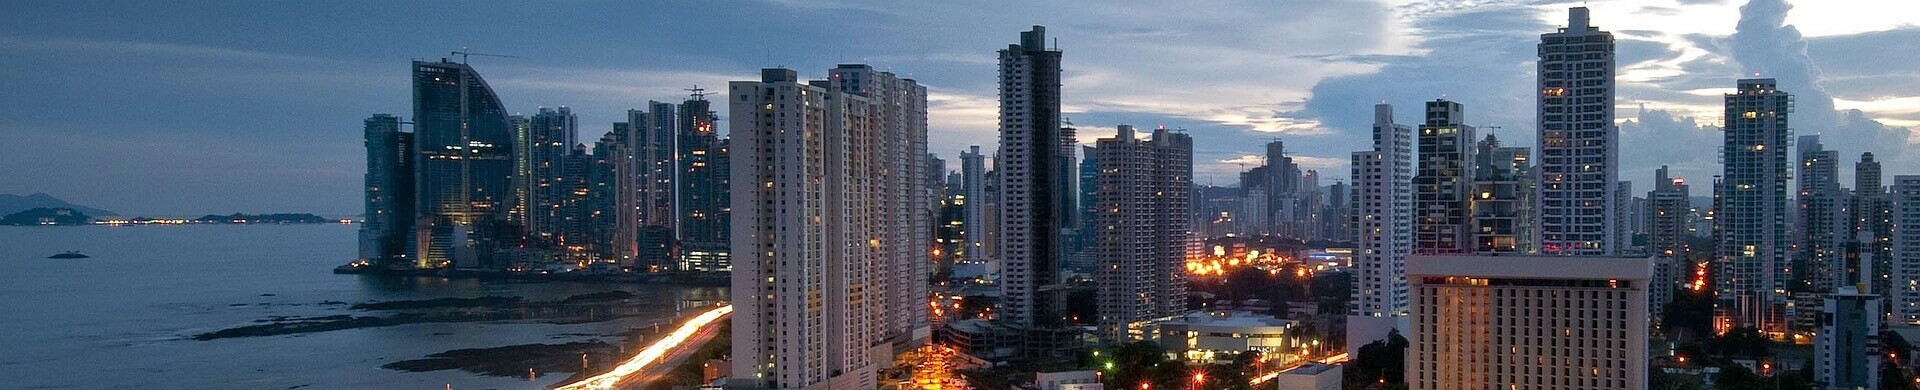 Miasto Panama - tło nagłówka strony